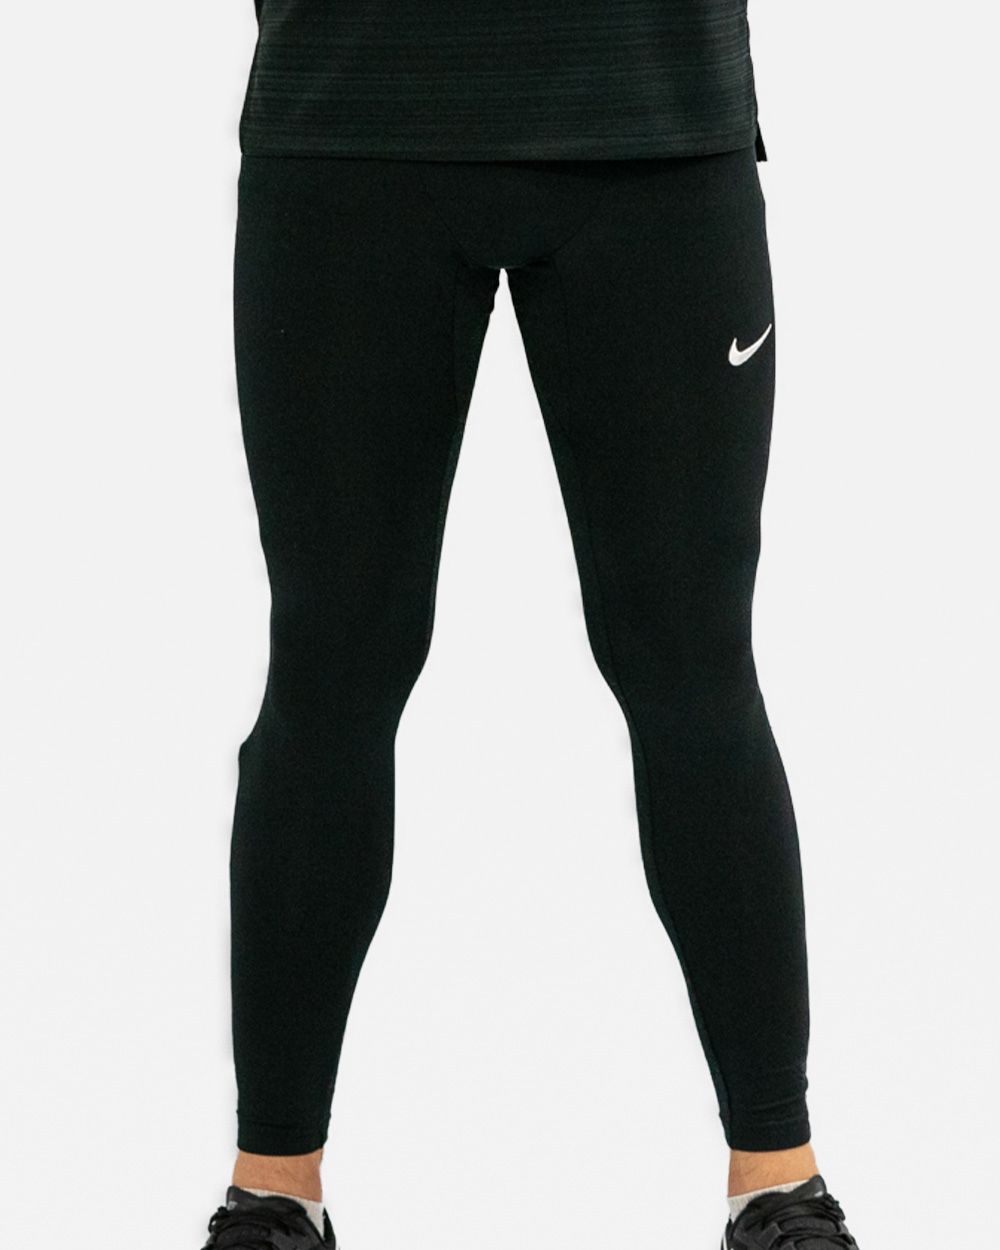 Nike Collant Pro M vêtement running homme : infos, avis et